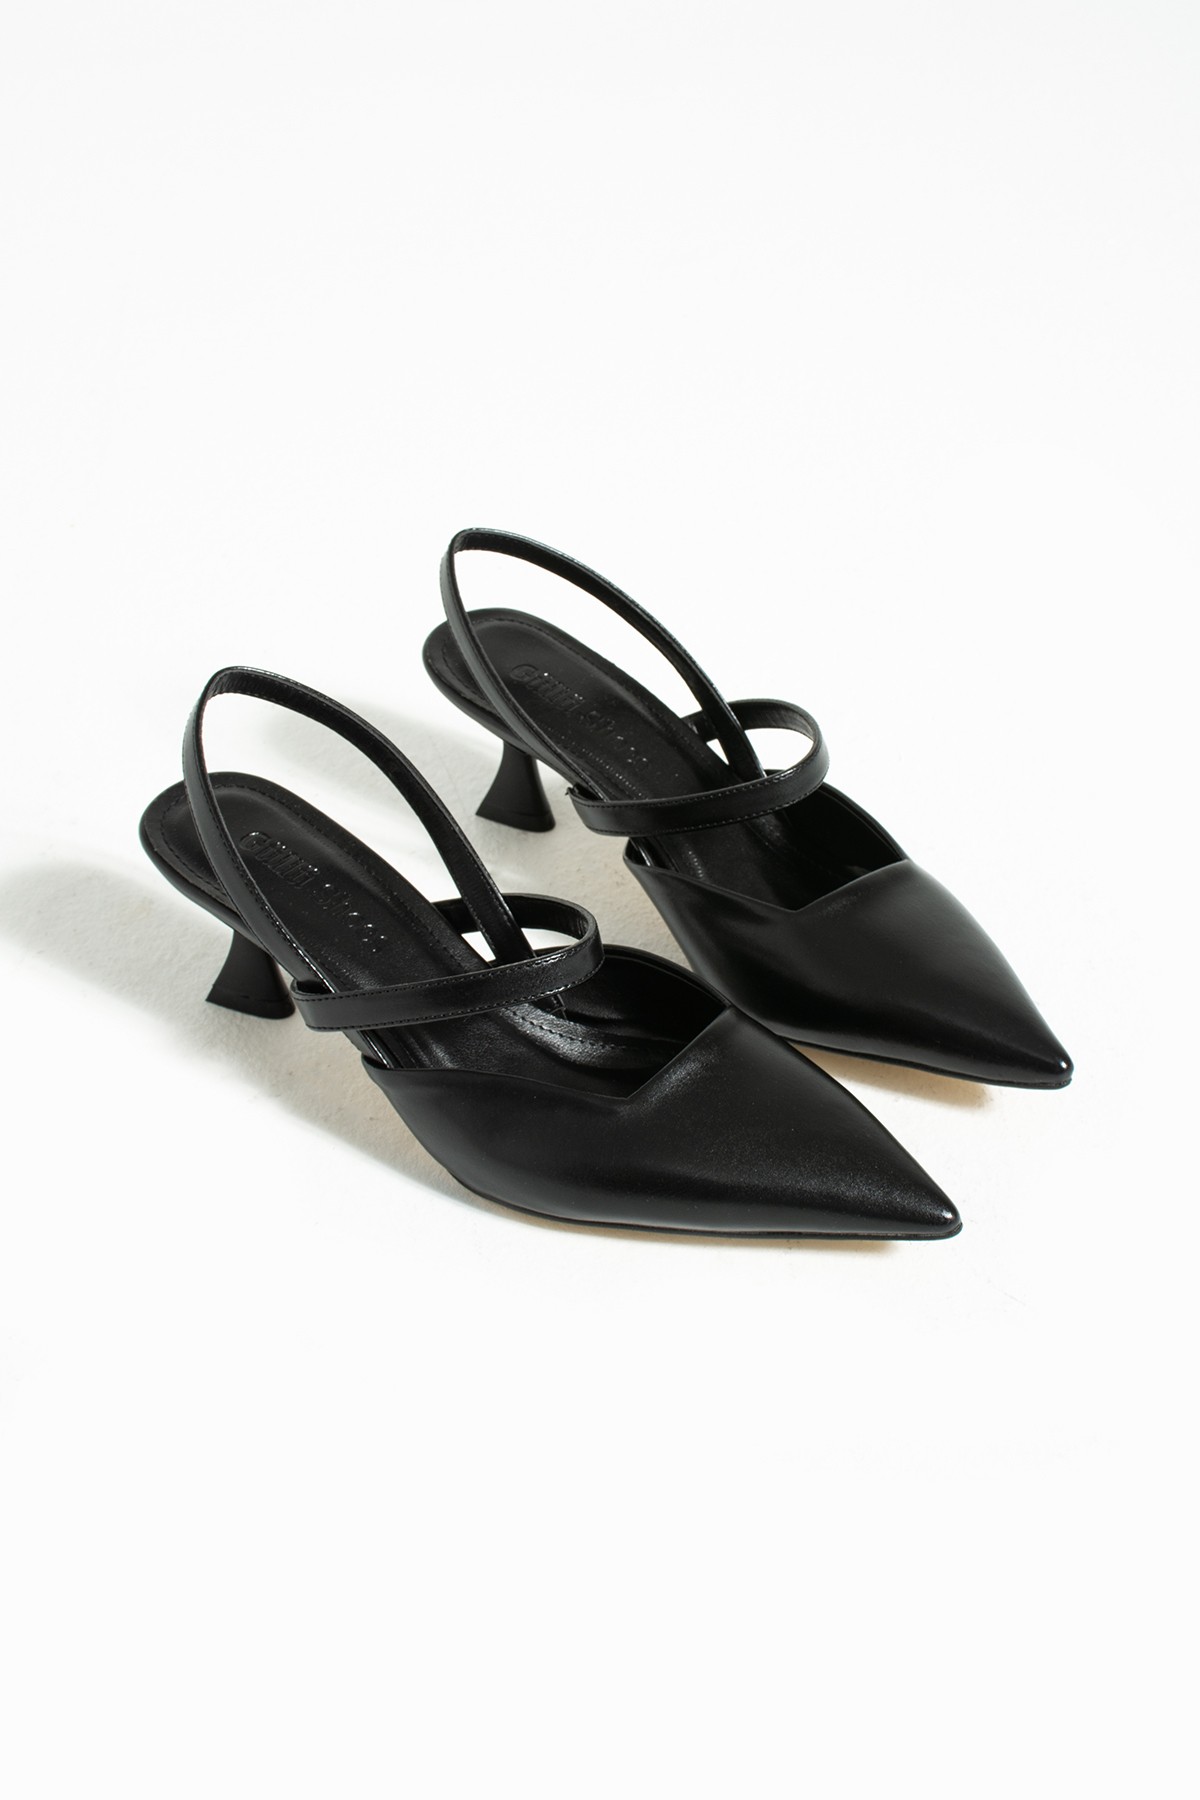 Kadın Topuklu Ayakkabı - Topuklu Stiletto Rahat ve Şık Bej Renk 6 cm